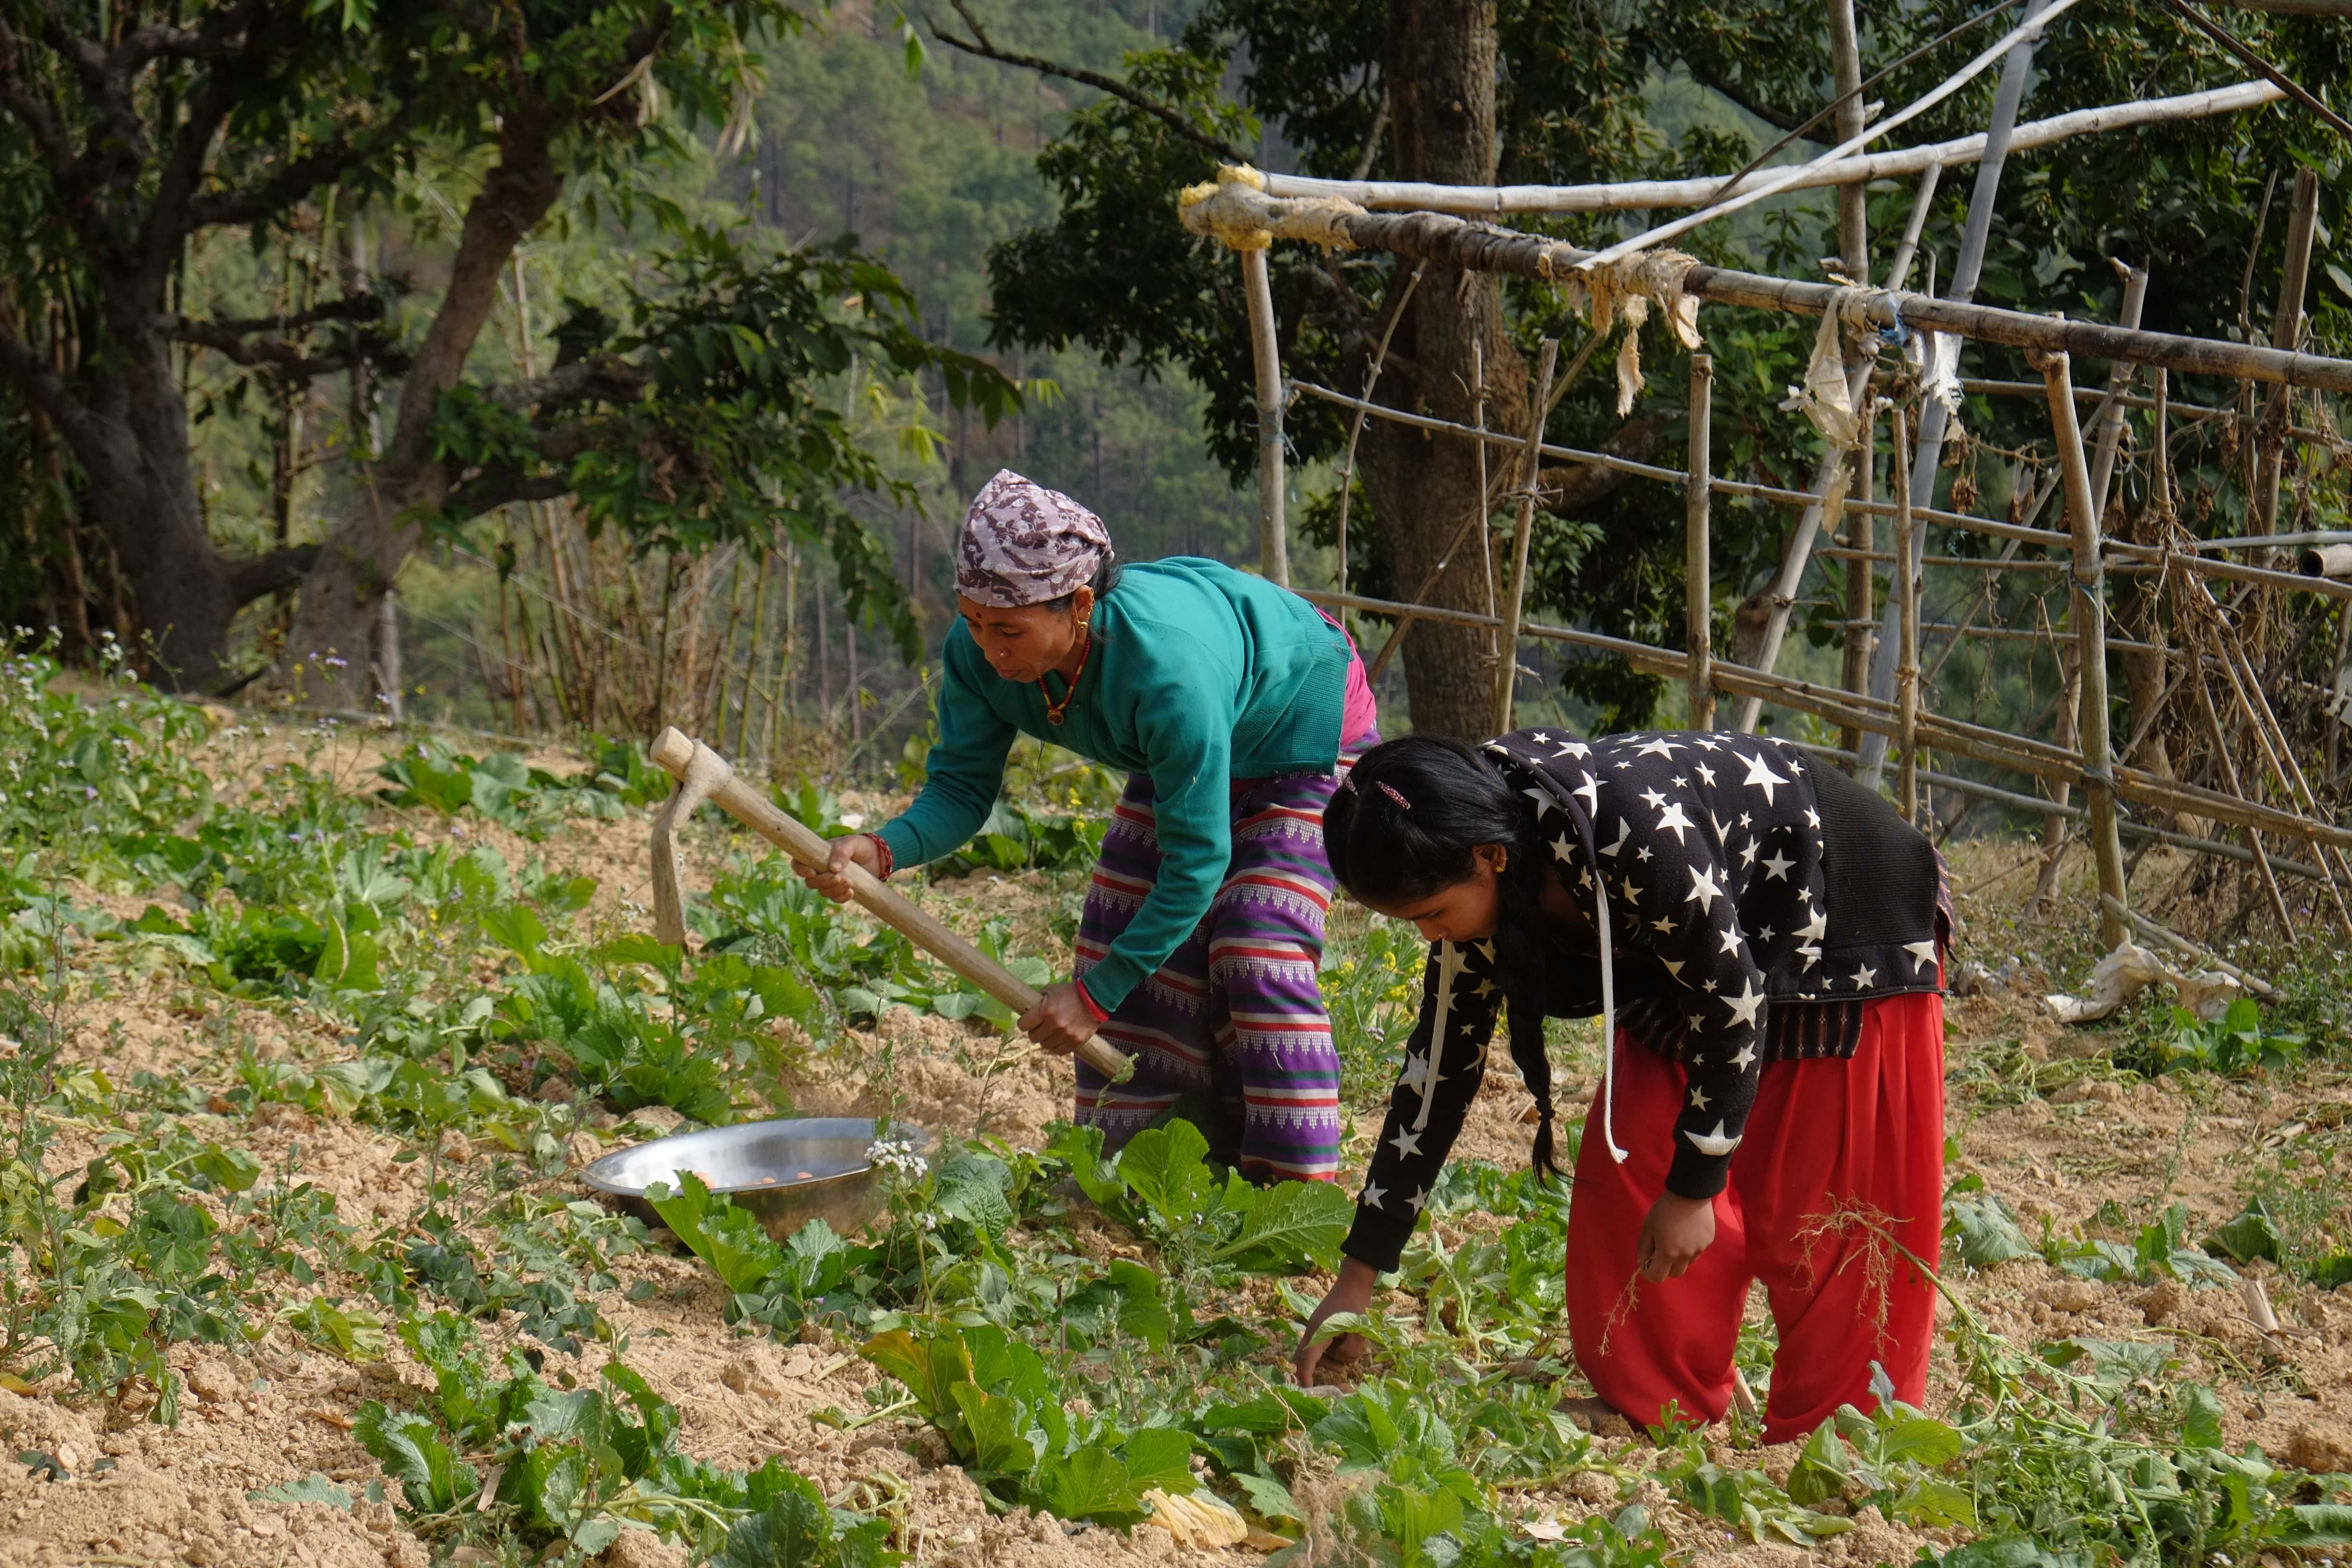 樂施會在尼泊爾多個地區開展生計項目，並以當地婦女為主要項目對象，讓婦女學習更有效率、更能適應氣候變化的種植技術。（攝影︰Wingo Chan / 樂施會義務攝影師）